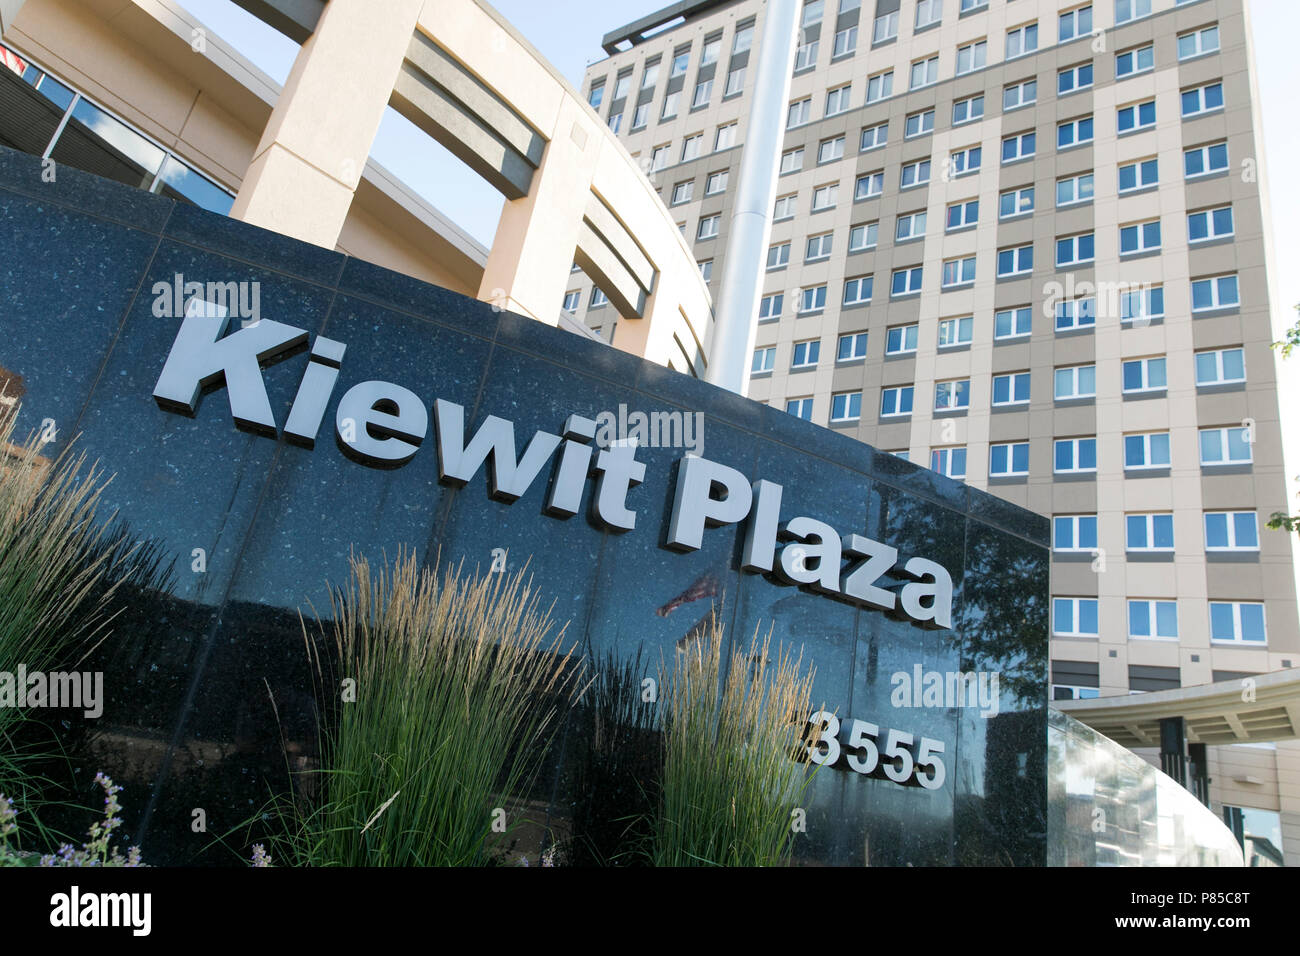 Un logo segno esterno di Kiewit Plaza, il quartier generale di entrambi i Kiewit Corporation e Berkshire Hathaway Inc., in Omaha, in Nebraska il 1 luglio 2018. Foto Stock